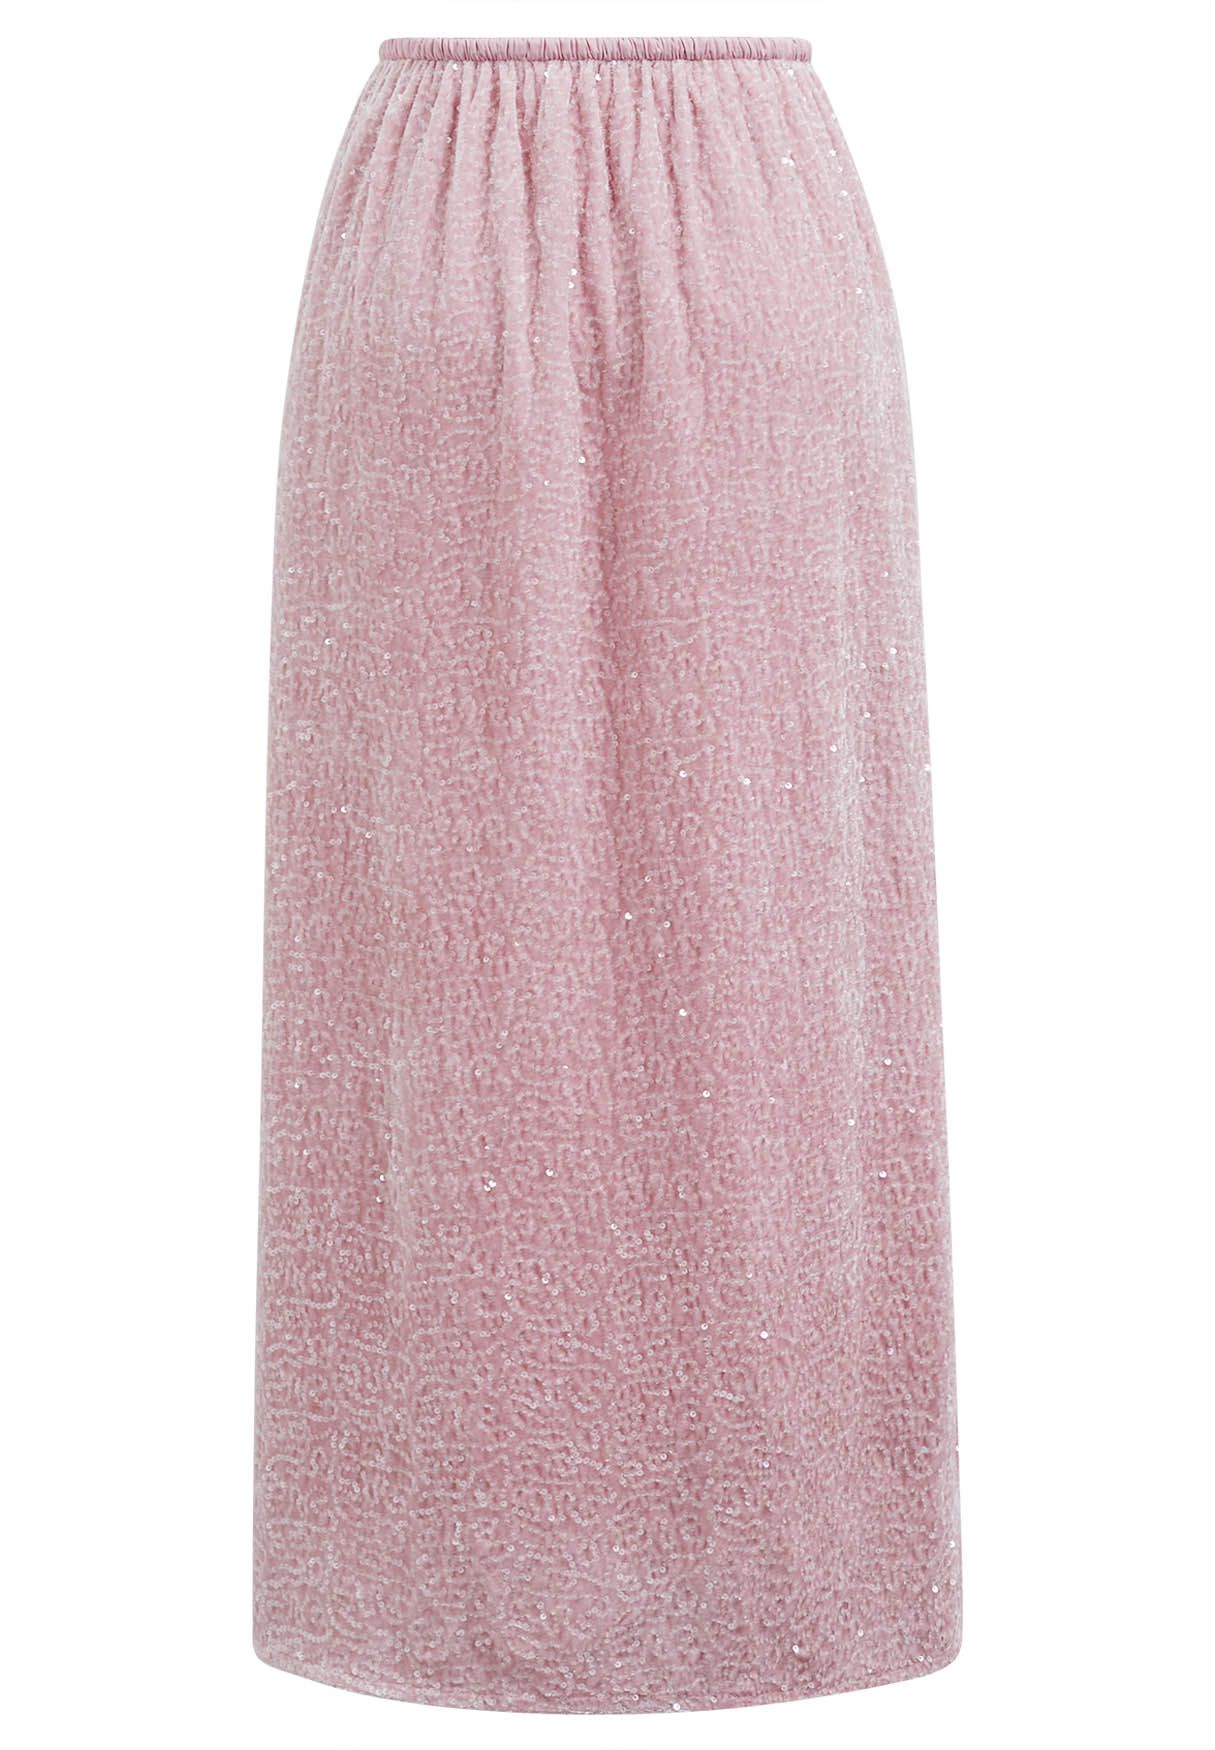 Sequin Adorned Velvet Pencil Skirt in Pink